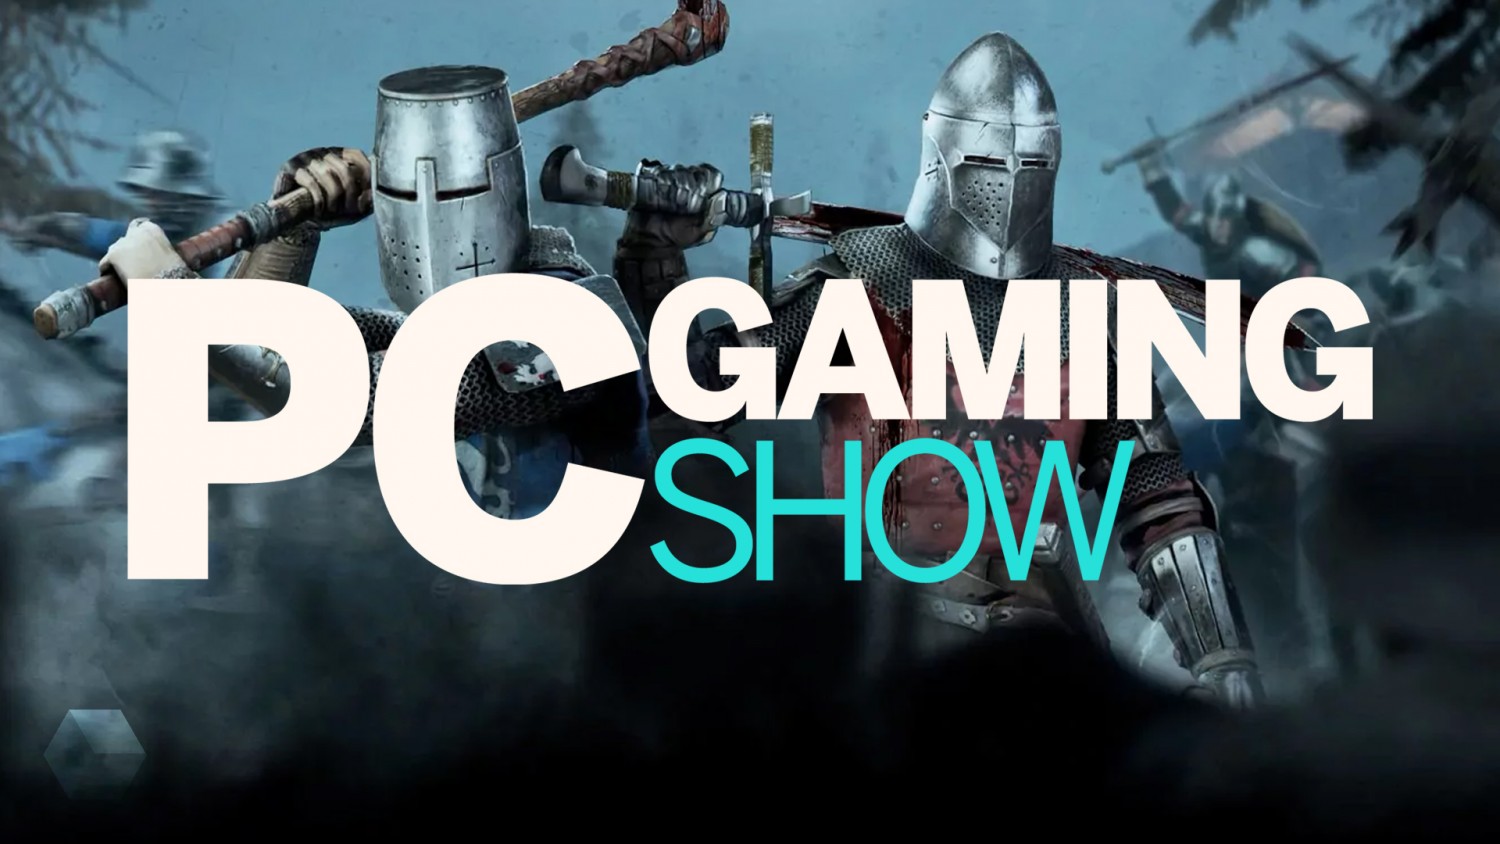 Все трейлеры и анонсы игр c PC Gaming Show на E3 2019